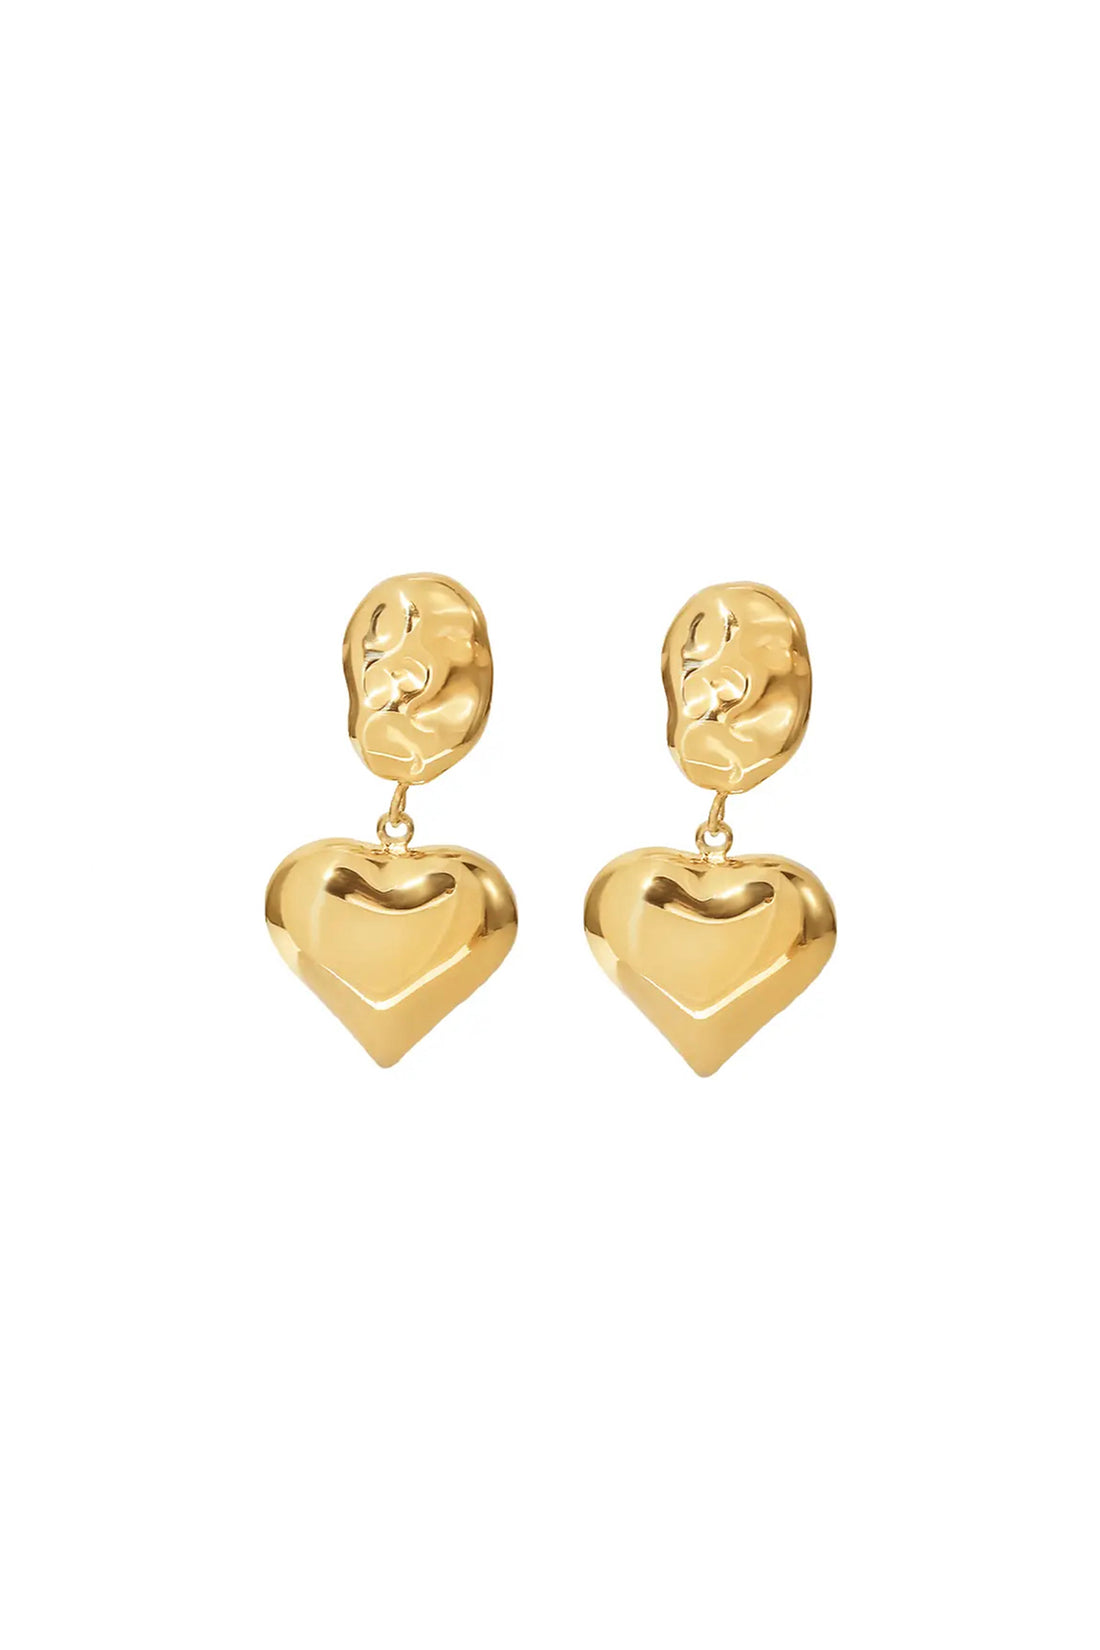 Aubery Earrings Gold